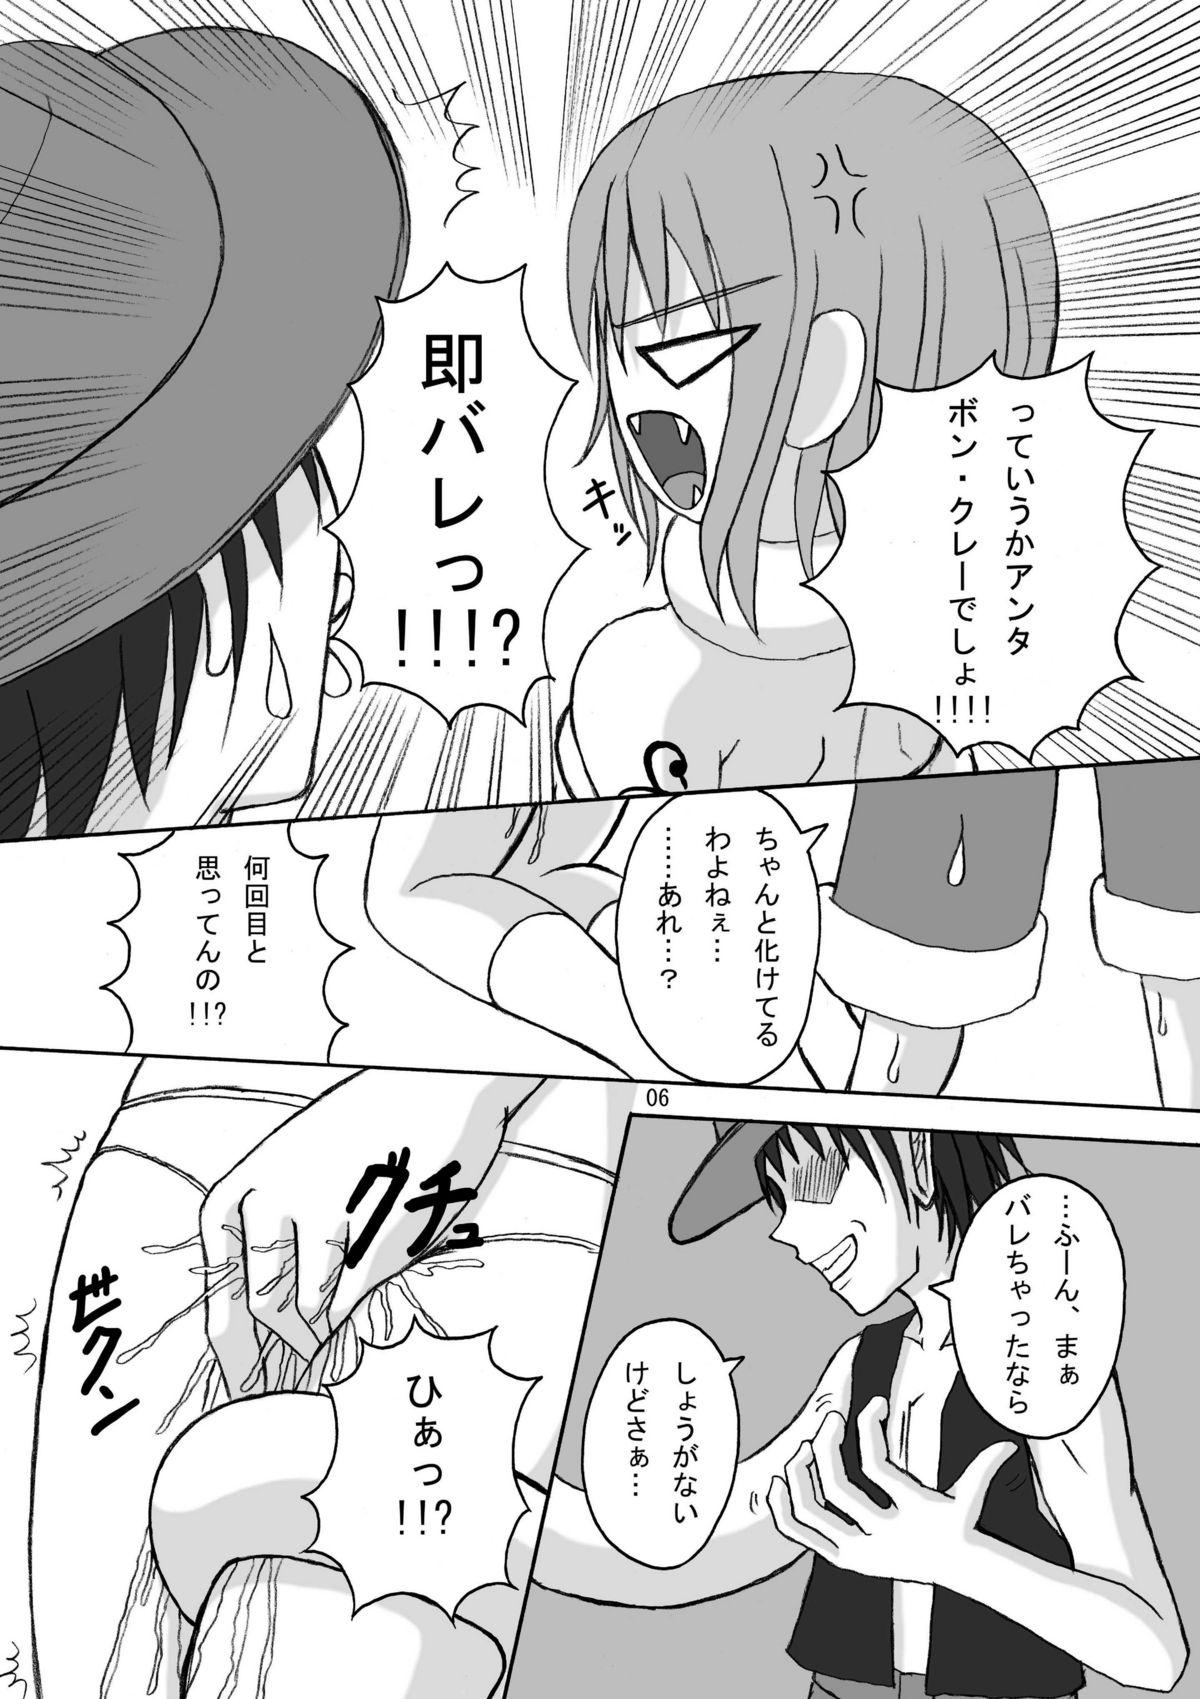 Escort Jump Tales 5 San P Nami Baku More Condom Nami vs Gear3 vs Marunomi Hebihime - One piece Gay Kissing - Page 5